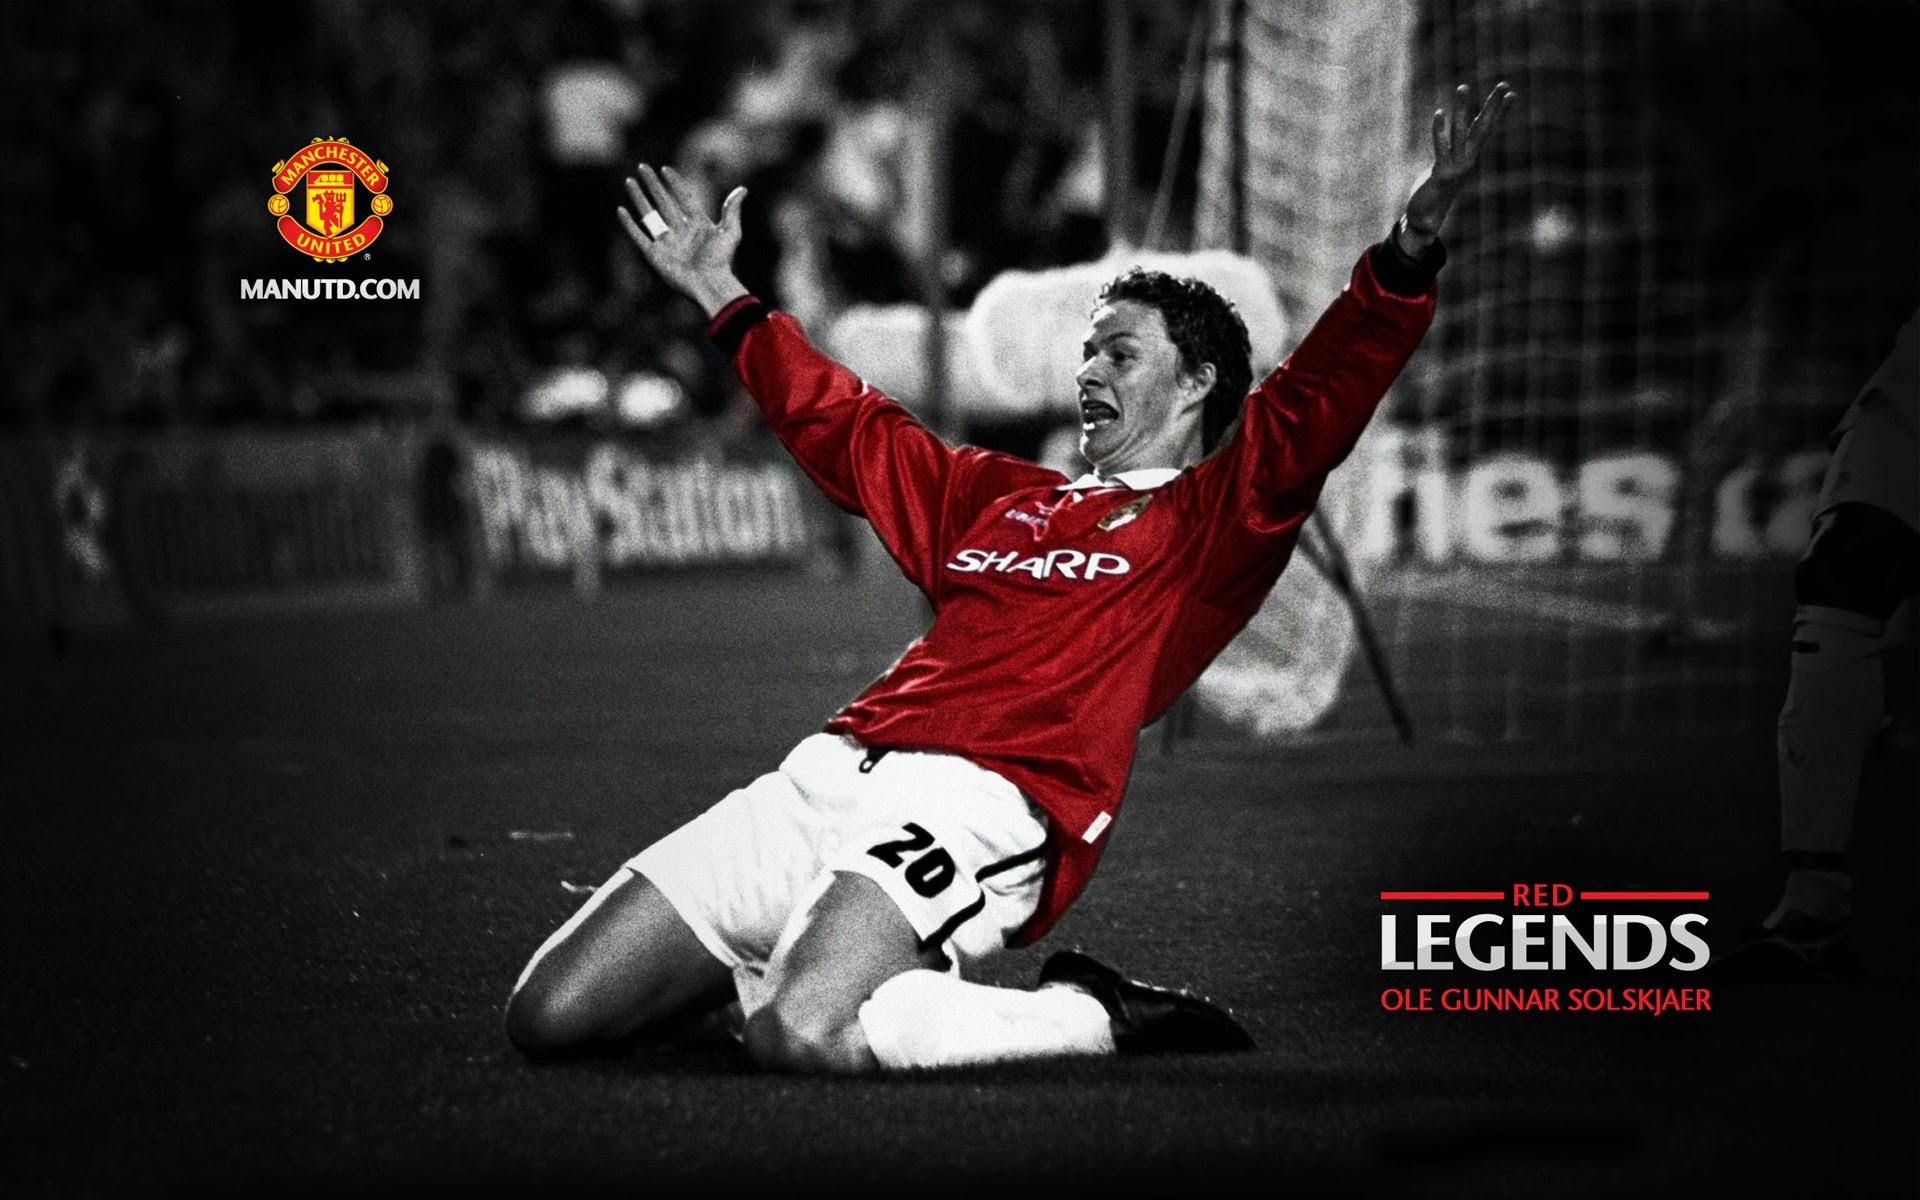 Ole Gunnar Solskjaer: Red Legends Manchester United